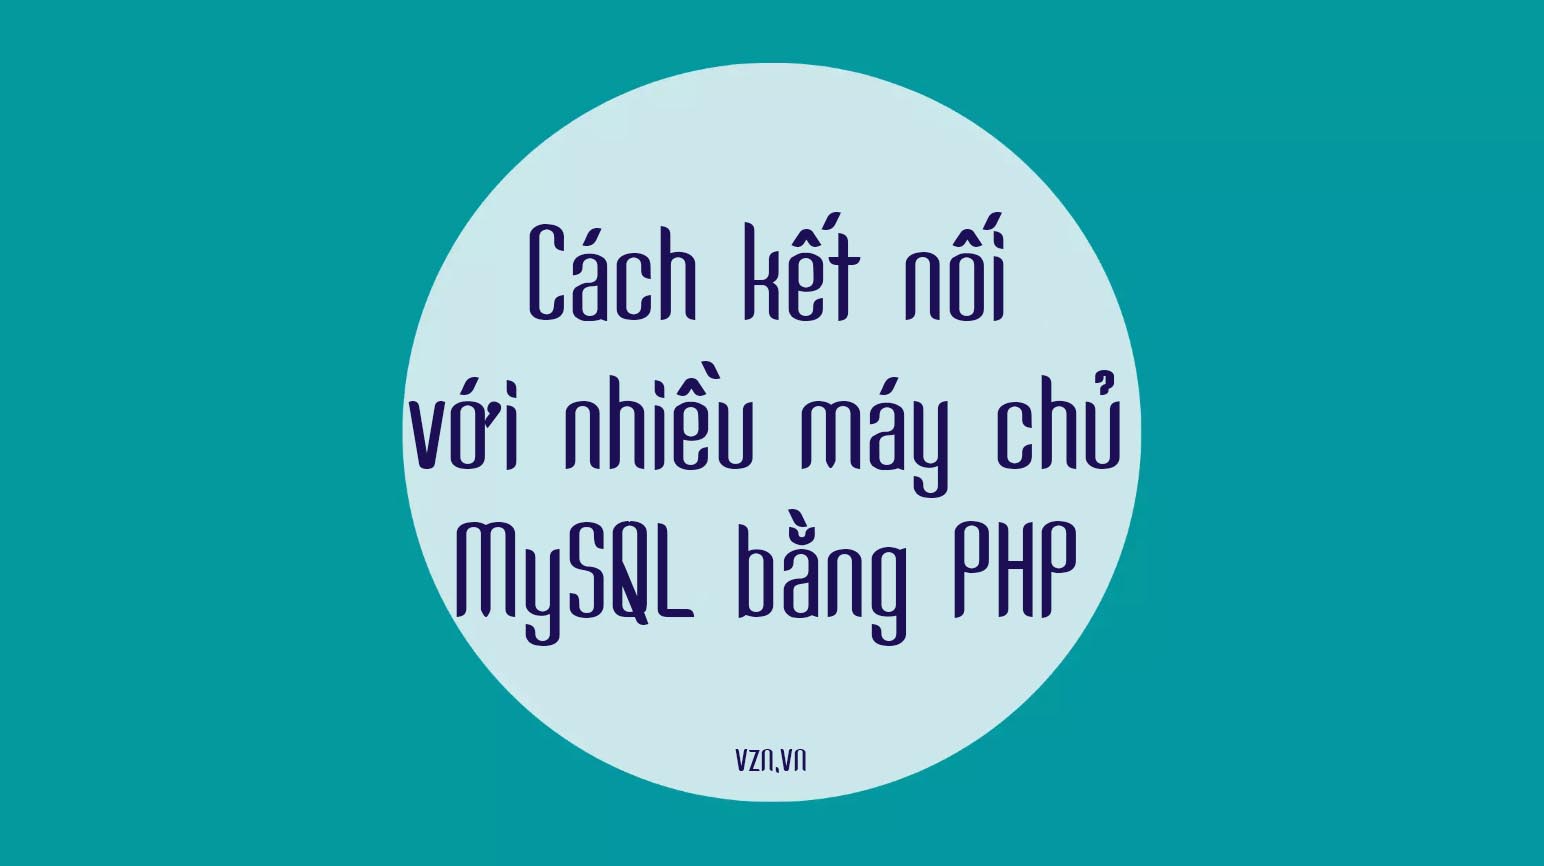 Cách kết nối với nhiều máy chủ MySQL bằng PHP